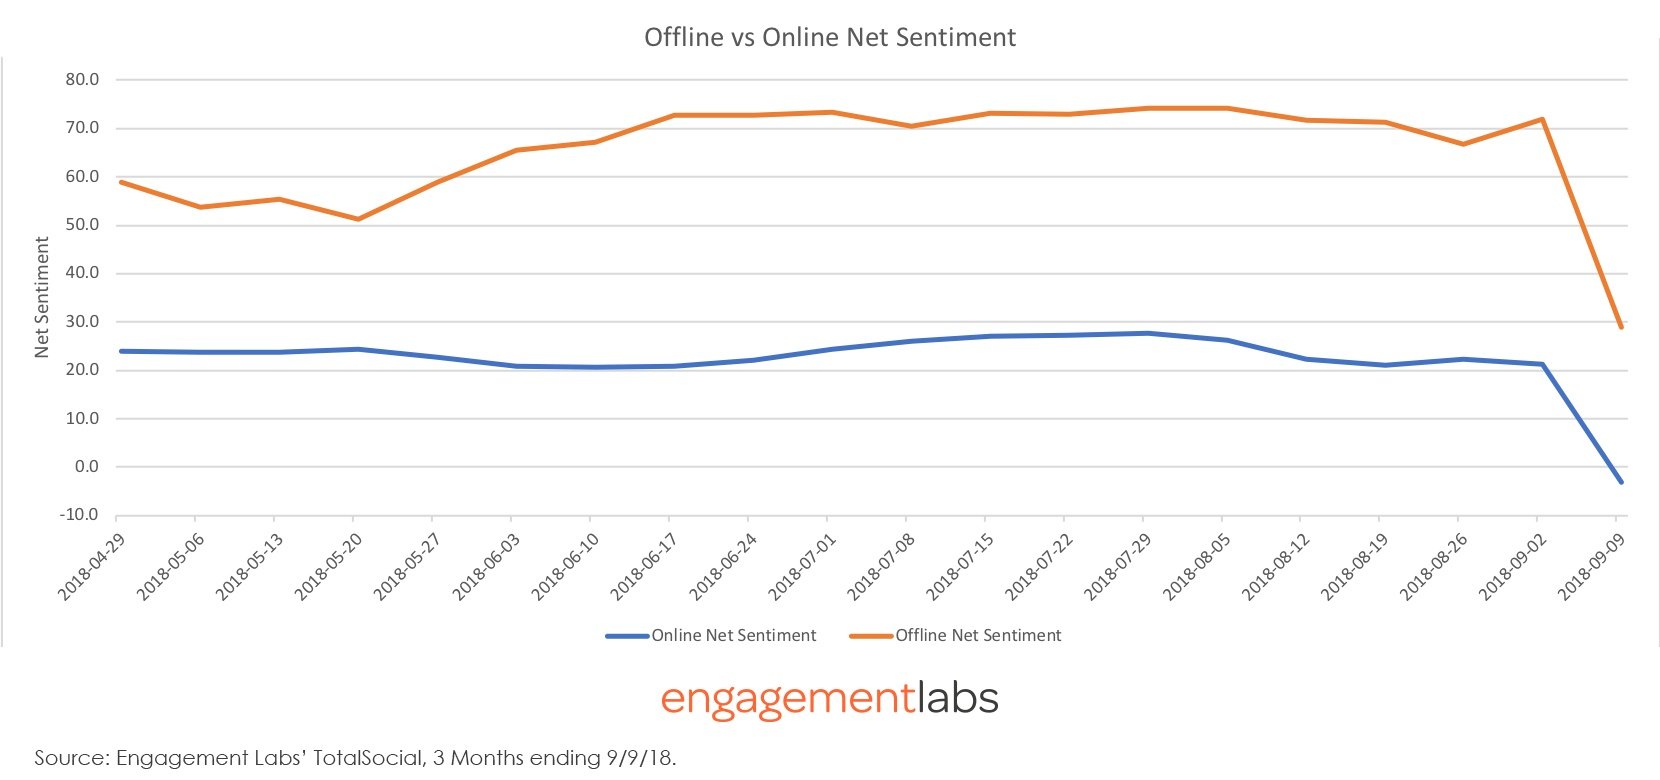 Nike Offline vs Online Net Sentiment